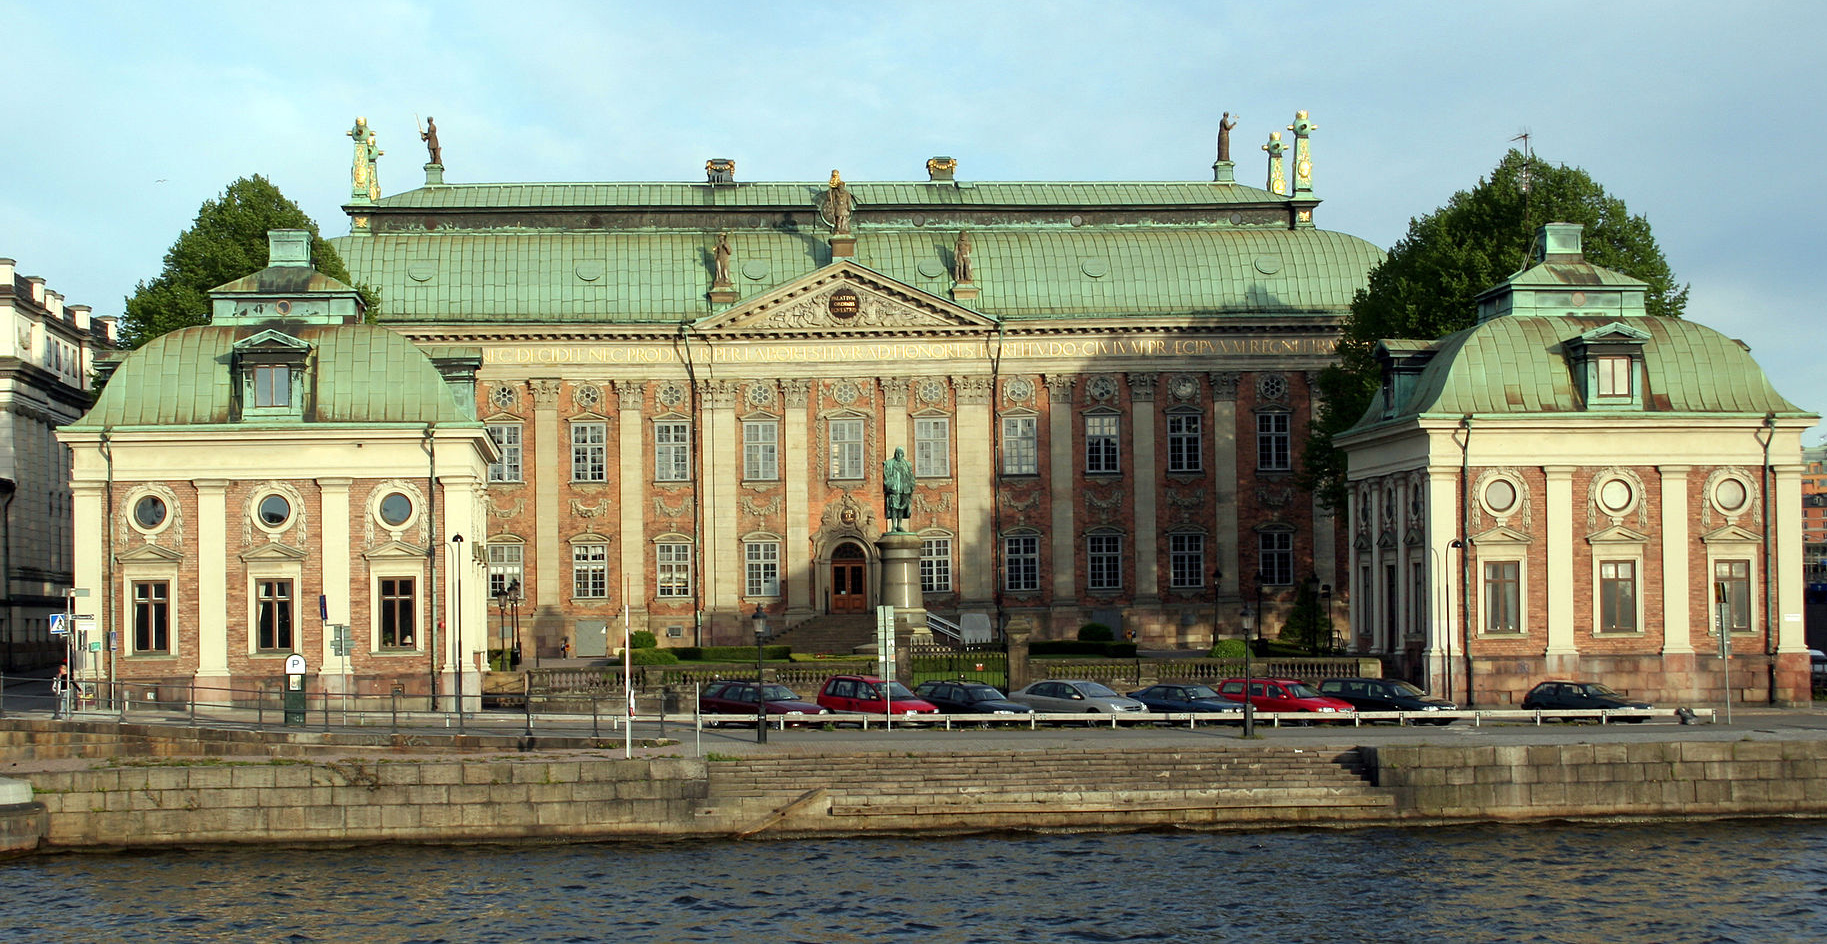 Är Riddarhuset i Stockholm Sveriges vackraste byggnad genom tiderna?